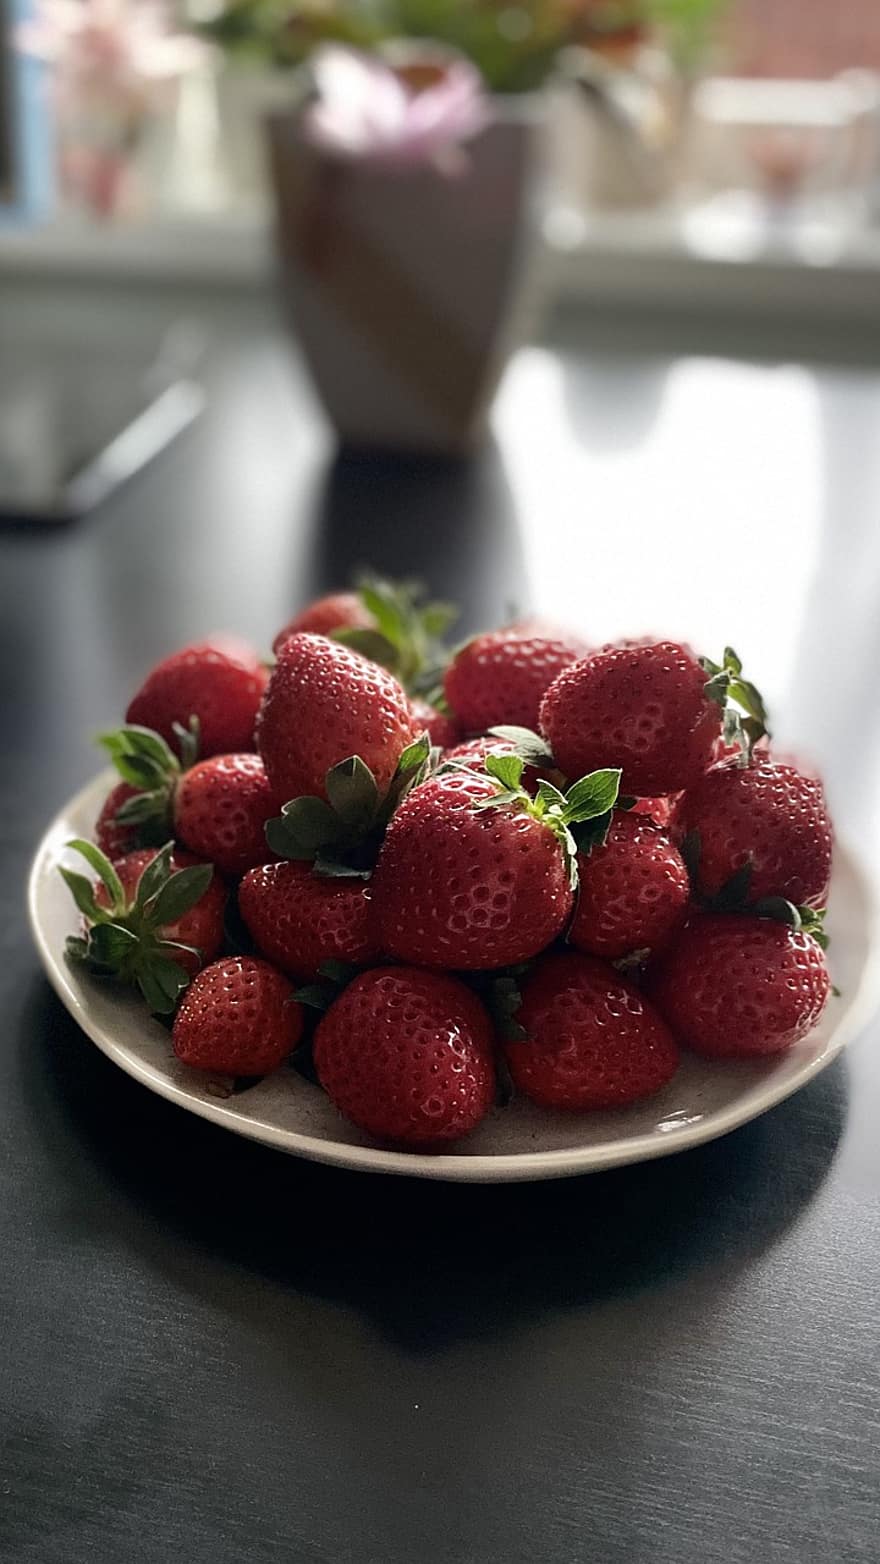 frukt, jordgubbe, organisk, mellanmål, mat, hälsosam, ljuv, vitamin, friskhet, närbild, äta nyttigt